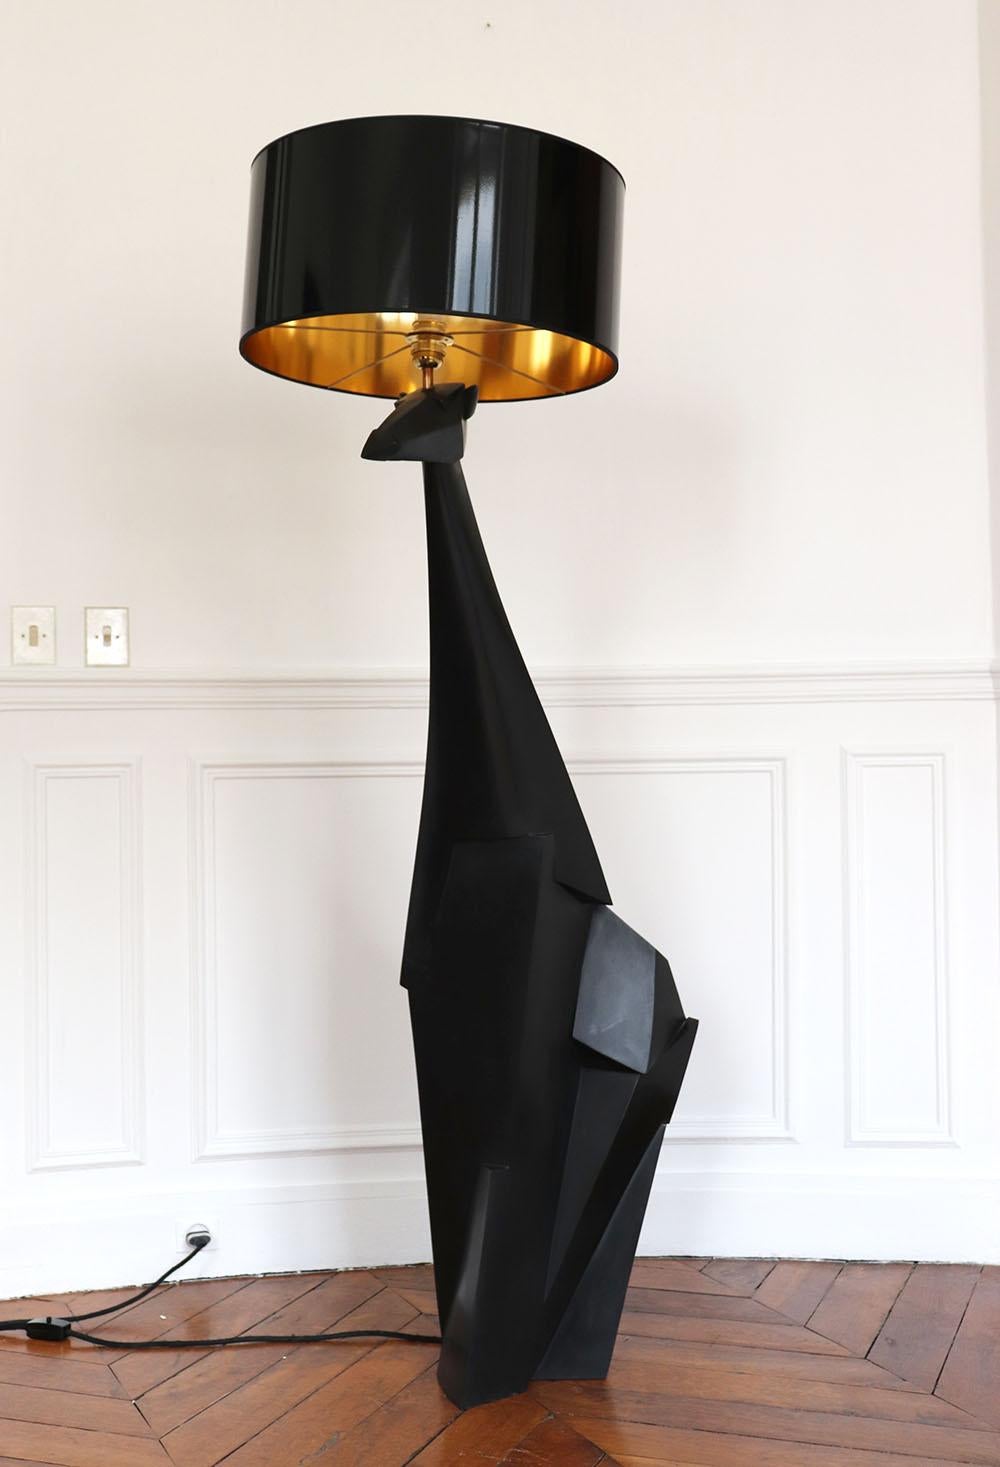 Kiotika est une sculpture en bronze et un lampadaire en édition limitée de l'artiste contemporain français Jacques Owczarek. 

Les dimensions indiquées se réfèrent à la sculpture avec l'abat-jour :
* Dimensions de la sculpture en bronze : H 128,5